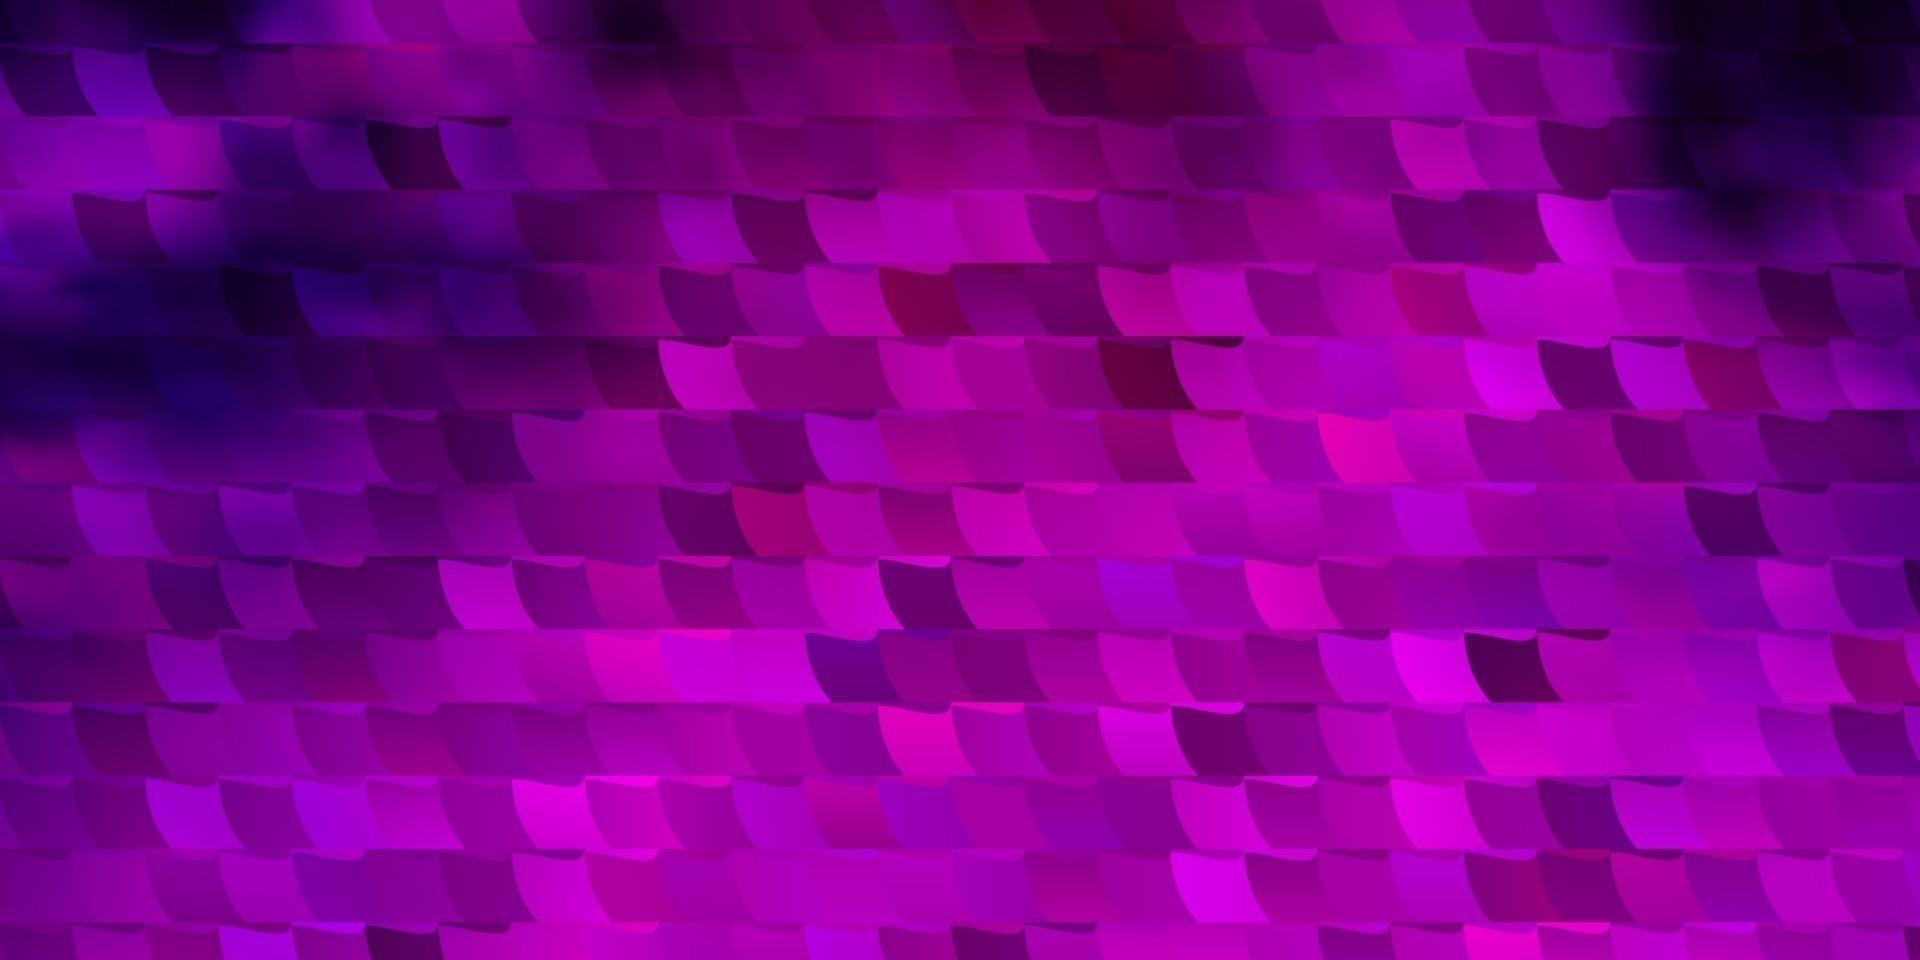 modèle vectoriel violet foncé dans un style carré.